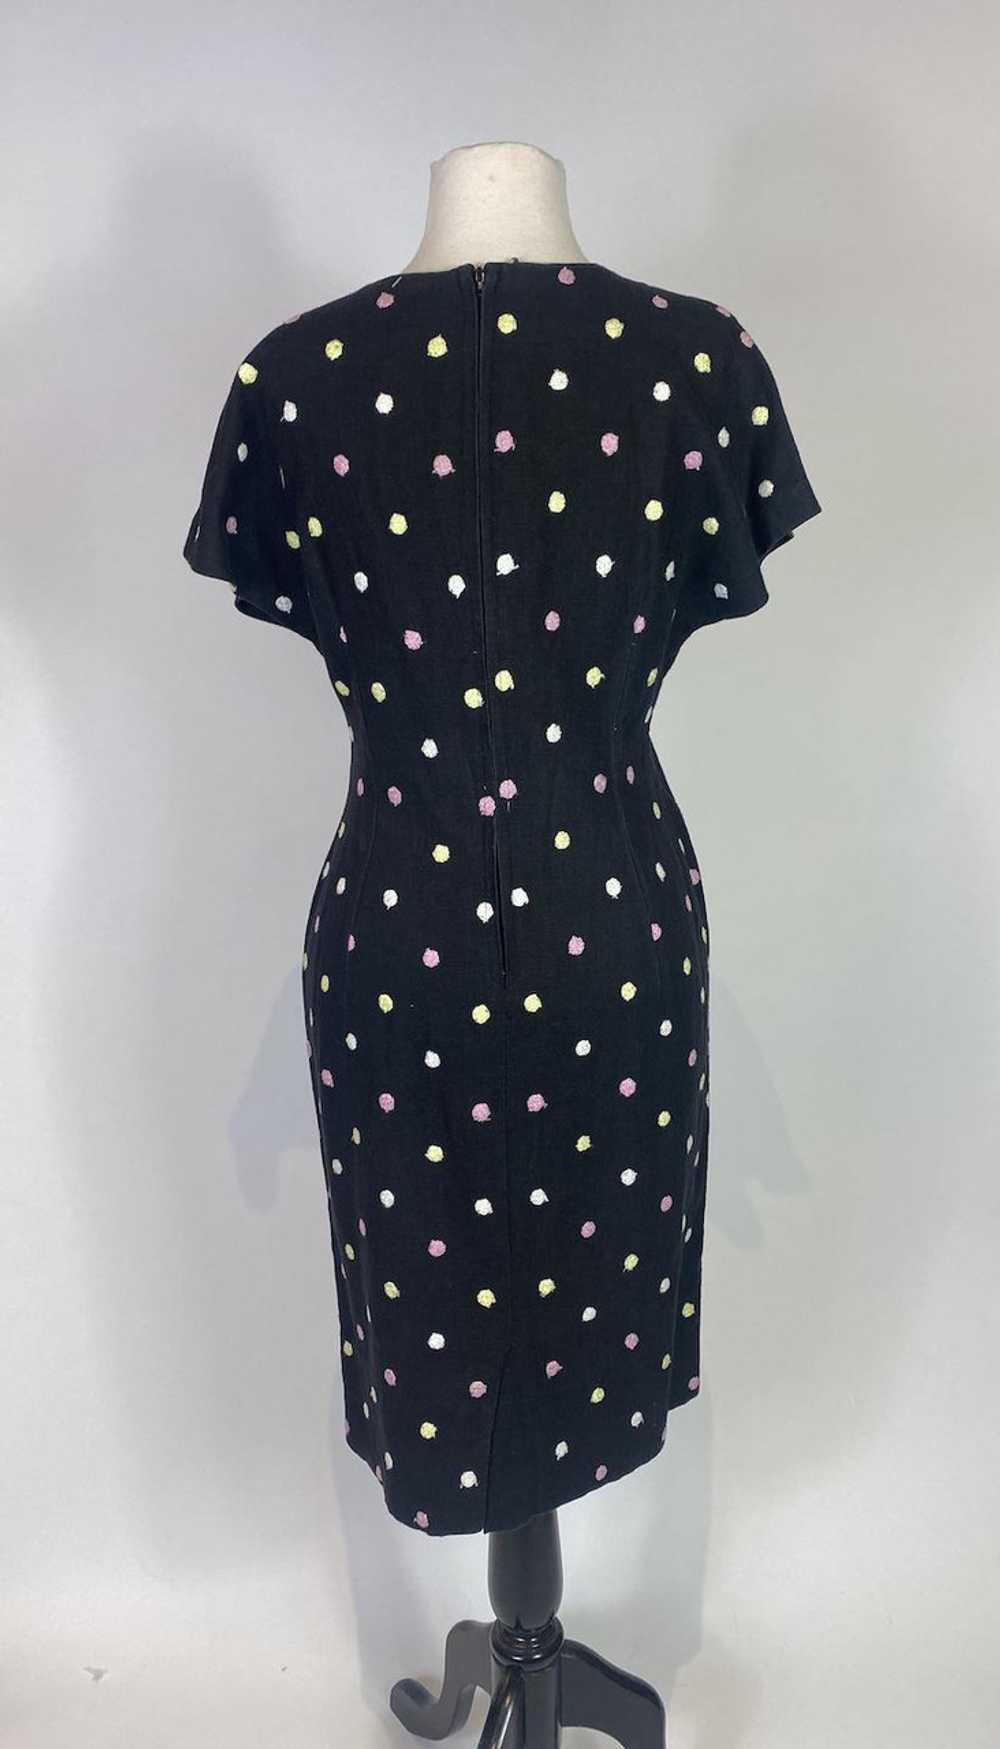 1960s Black Polka Dot Dress - image 5